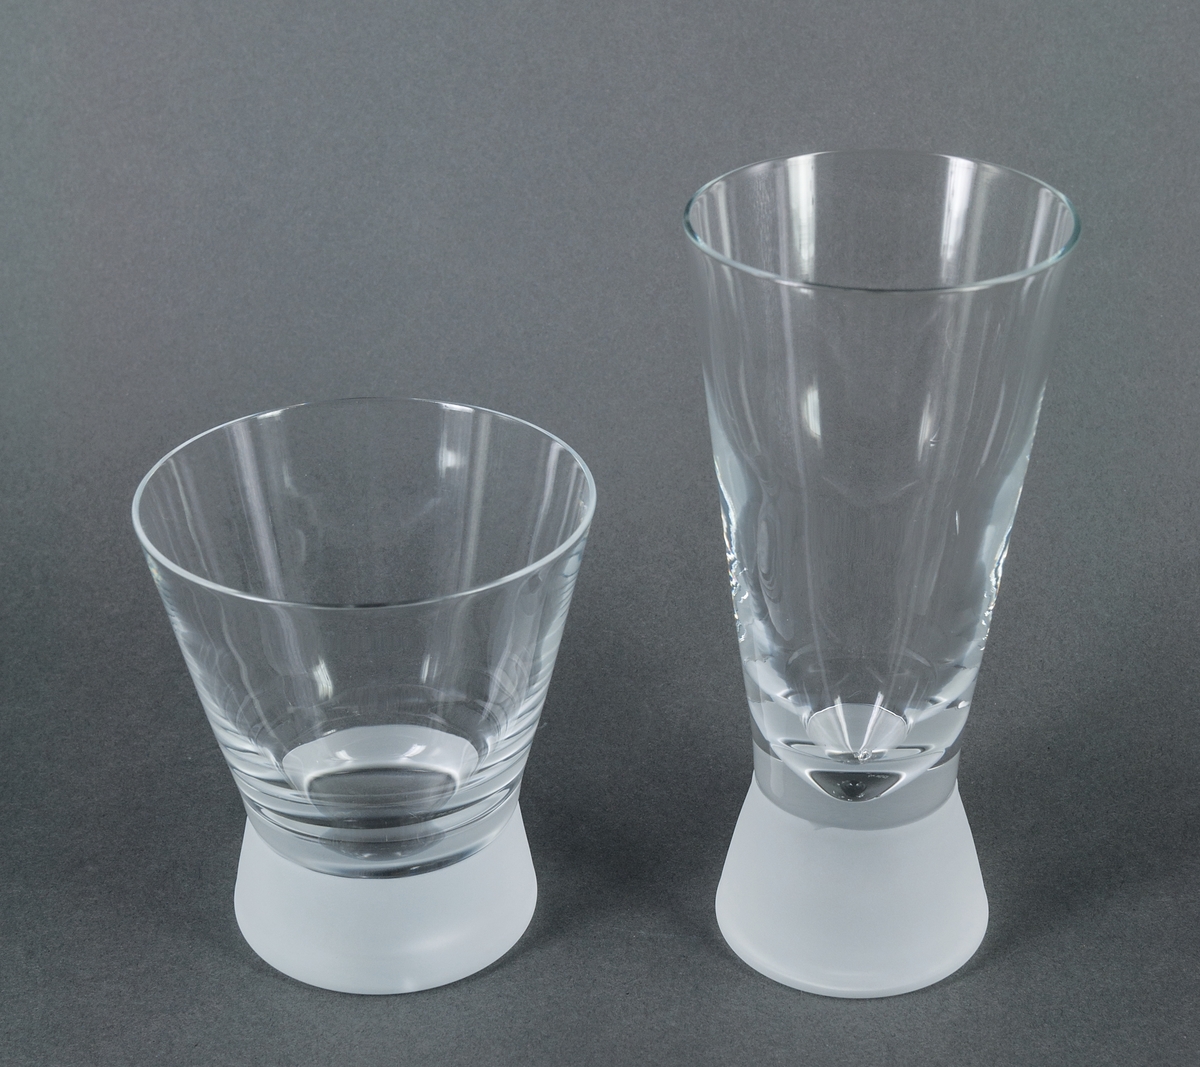 Cocktailglas (tumbler), prov till modell "Queen frostad". Ofärgat med tjock, frostad fot. Raka utåtlutande sidor. Design Gunnar Cyrén för Orrefors Glasbruk.